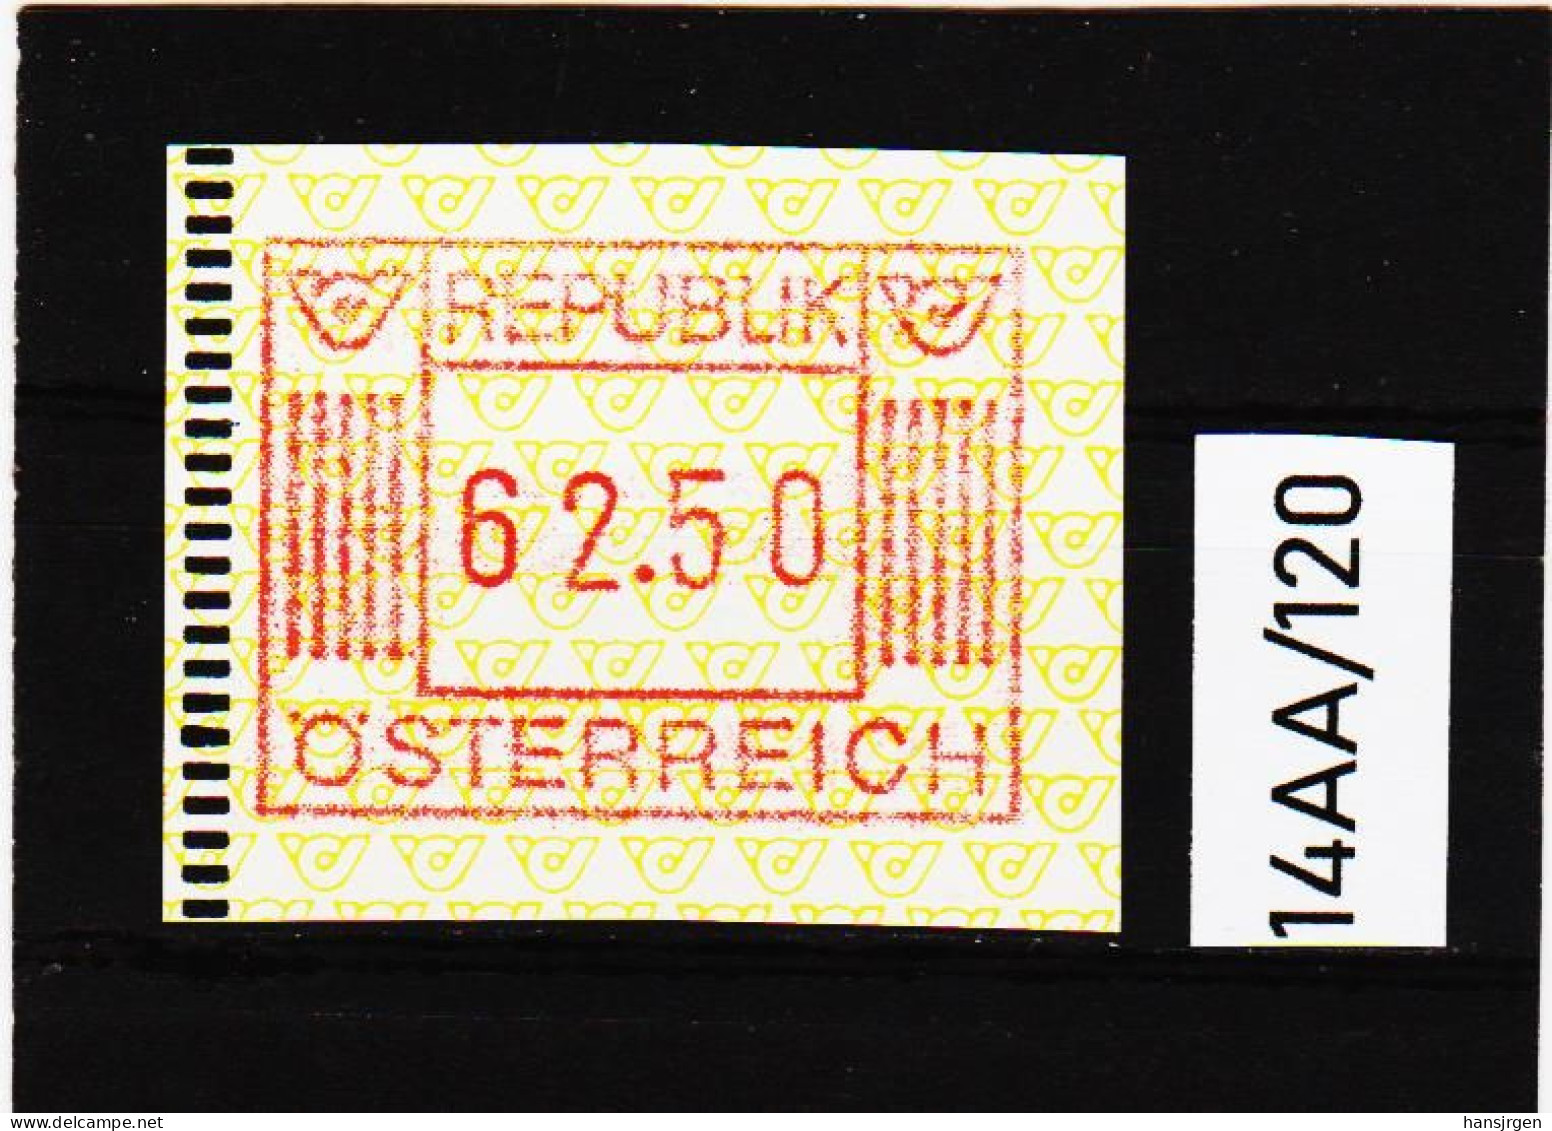 14AA/120  ÖSTERREICH 1983 AUTOMATENMARKEN  A N K  1. AUSGABE  62,50 SCHILLING   ** Postfrisch - Automatenmarken [ATM]